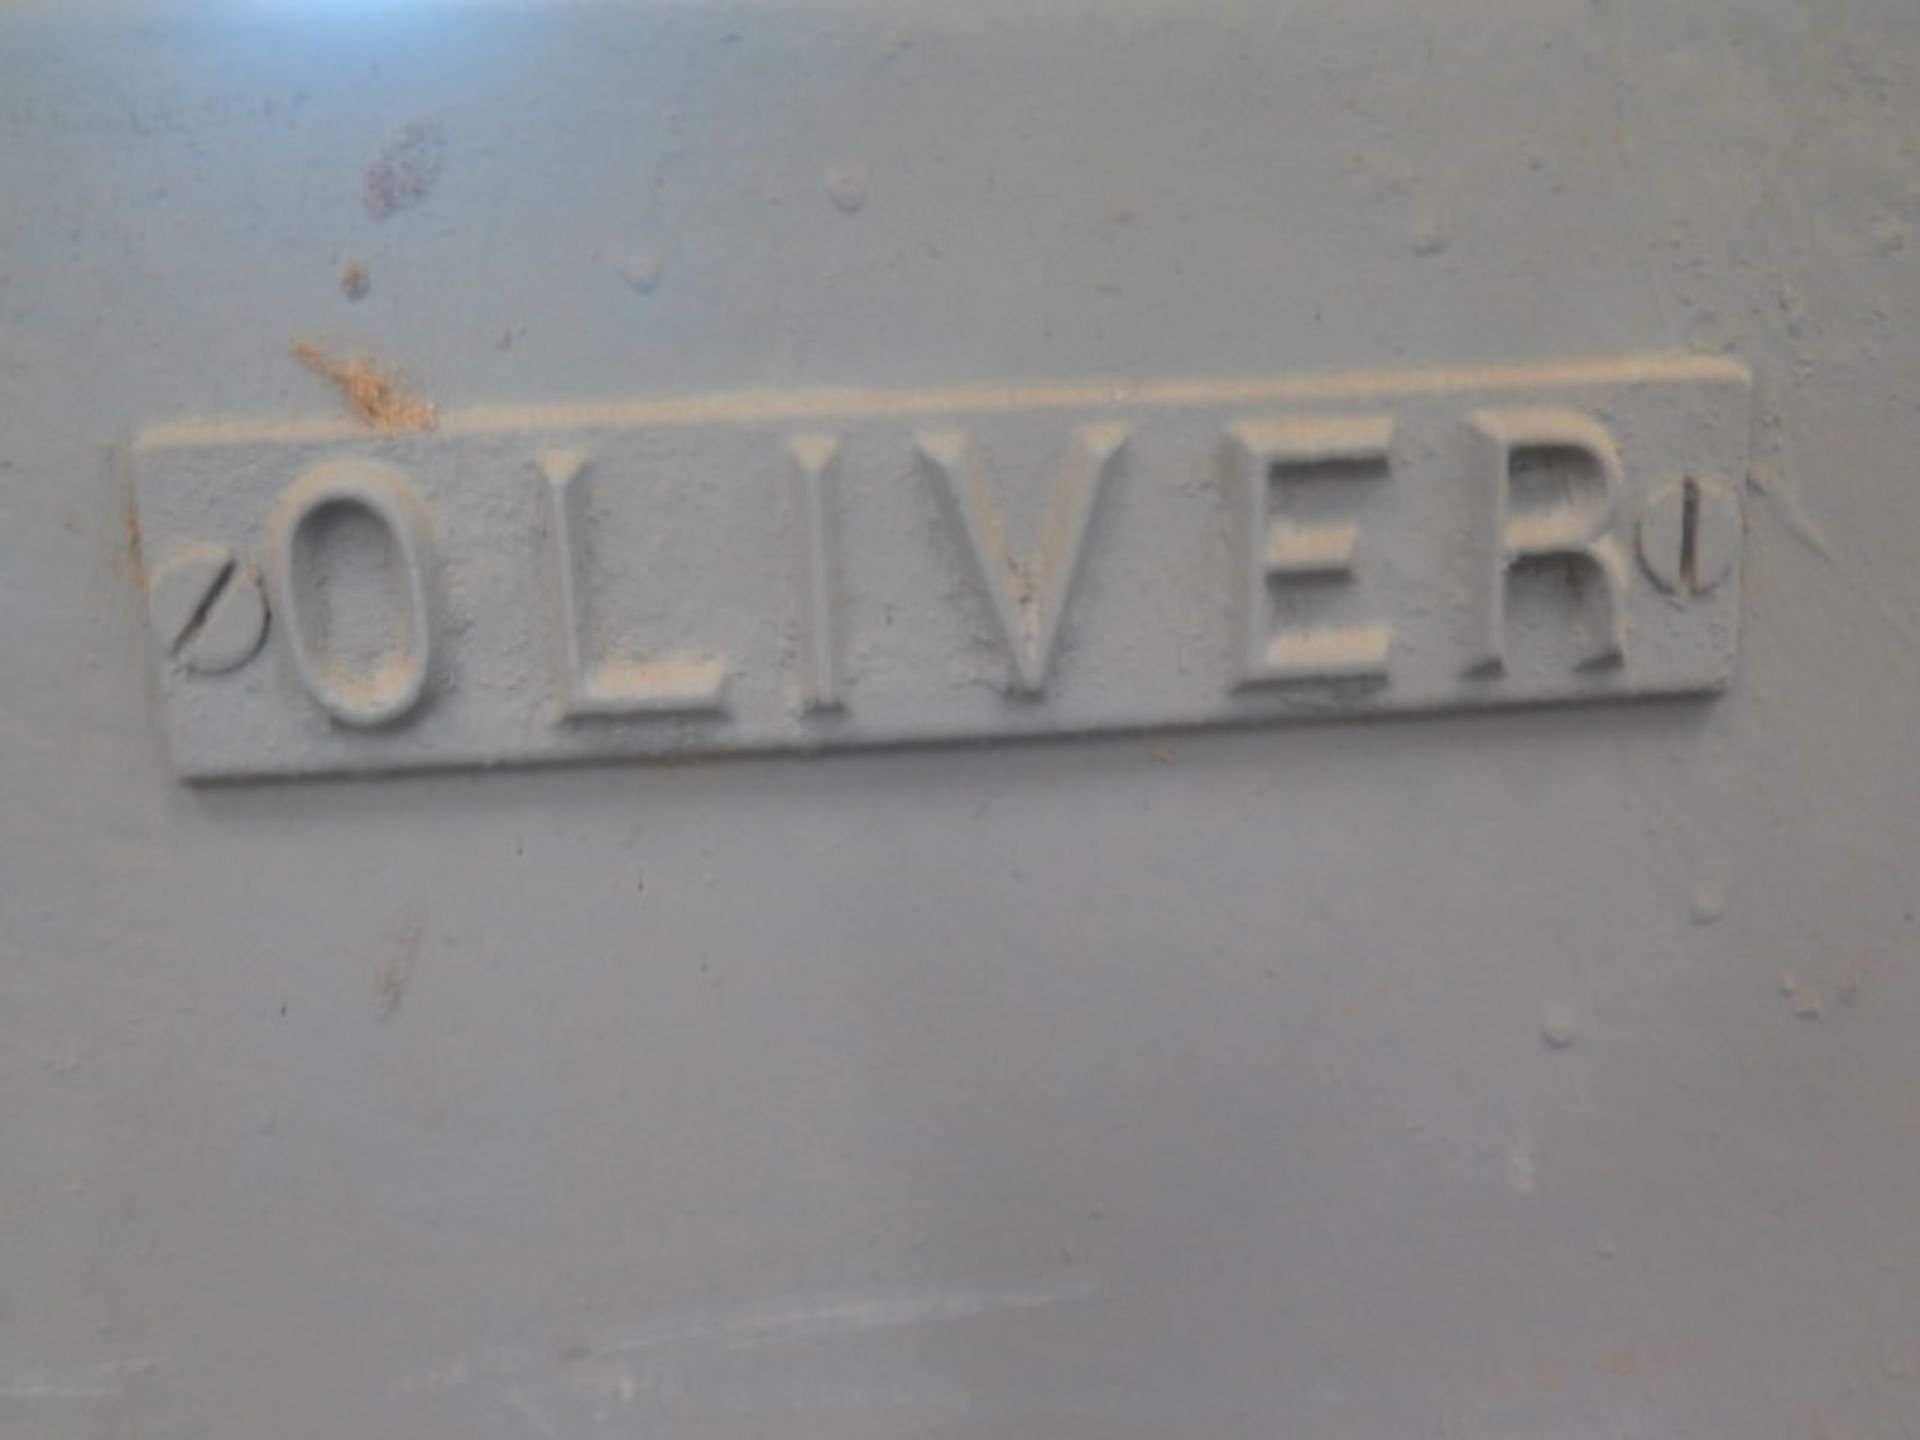 Oliver mdl. 399-D 18” x 6” Planer s/n 65920 - Image 4 of 4